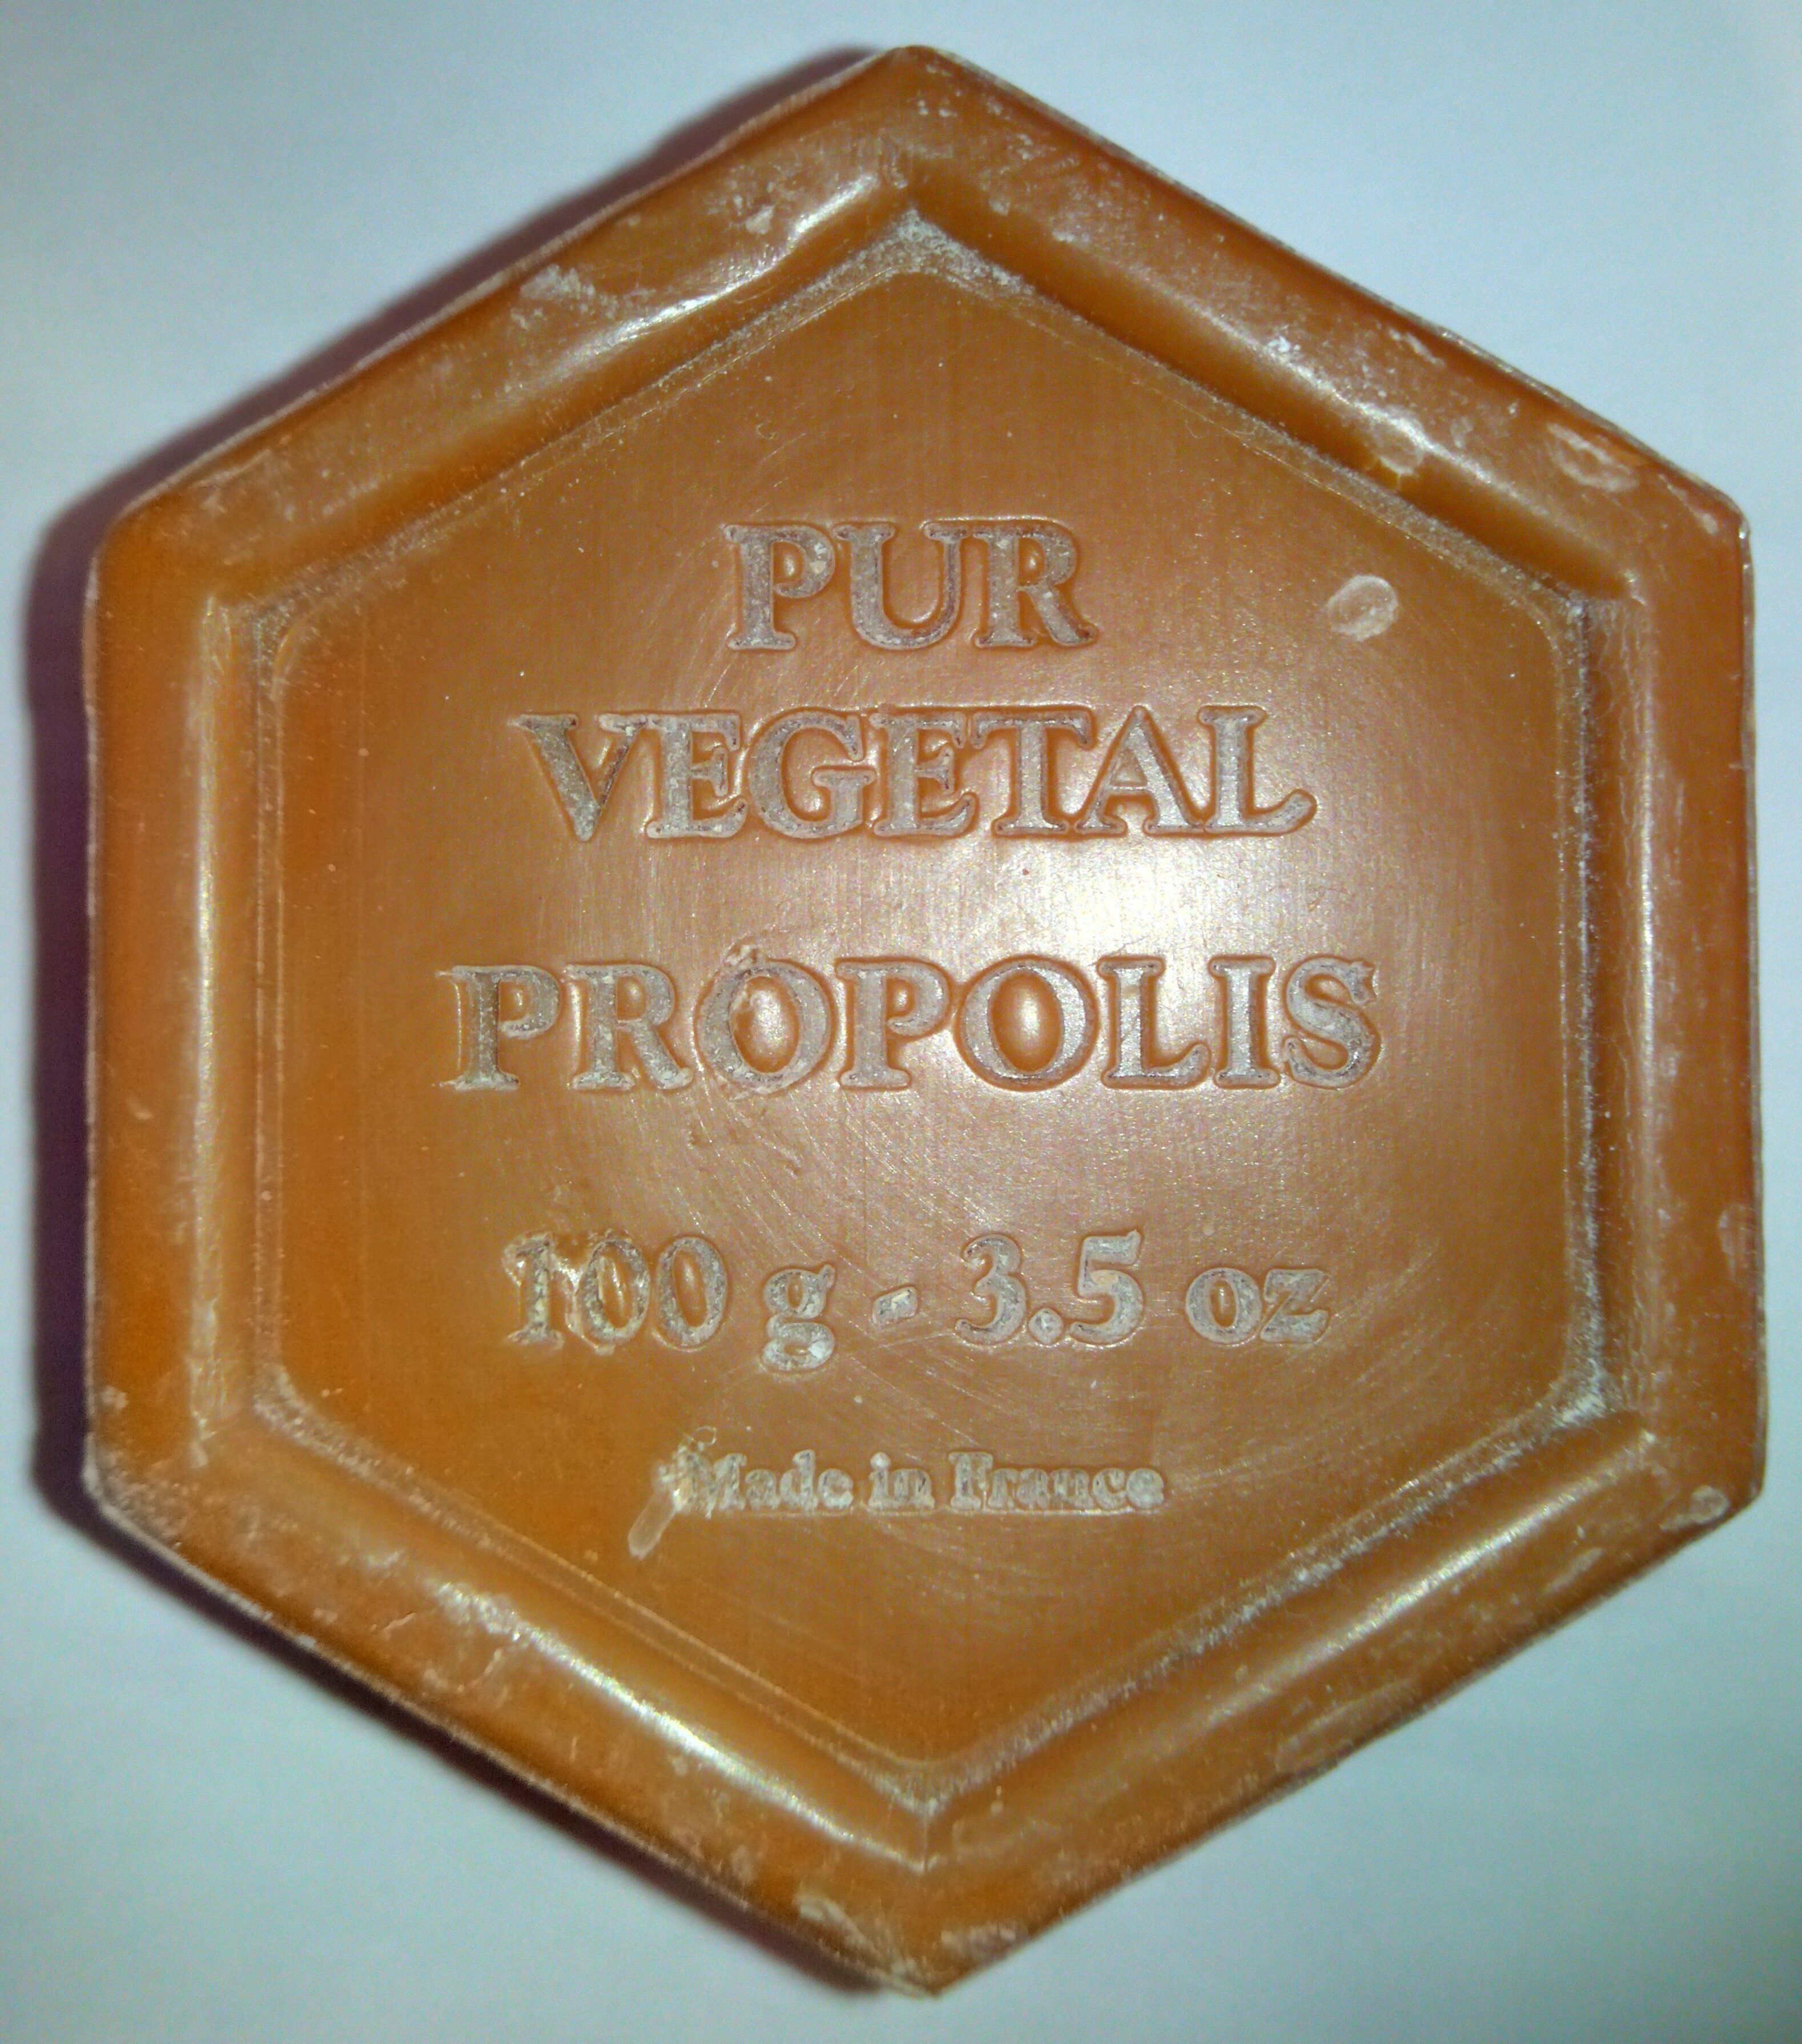 Savon à la Propolis 100g - Product - fr